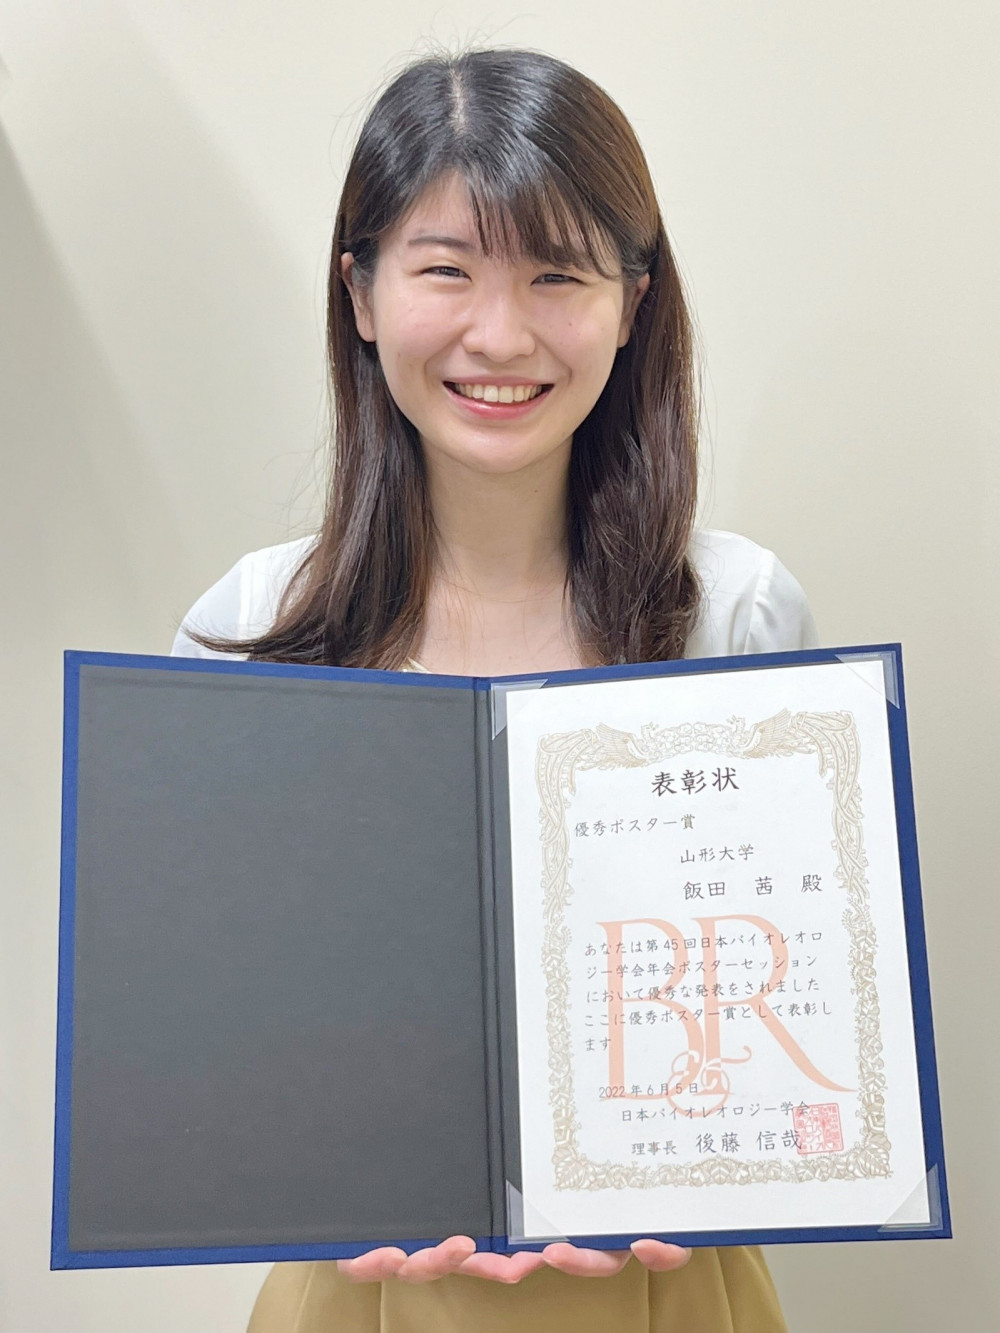 博士後期課程1年の飯田茜さんが第45回日本バイオレオロジー学会年会で優秀ポスター賞を受賞